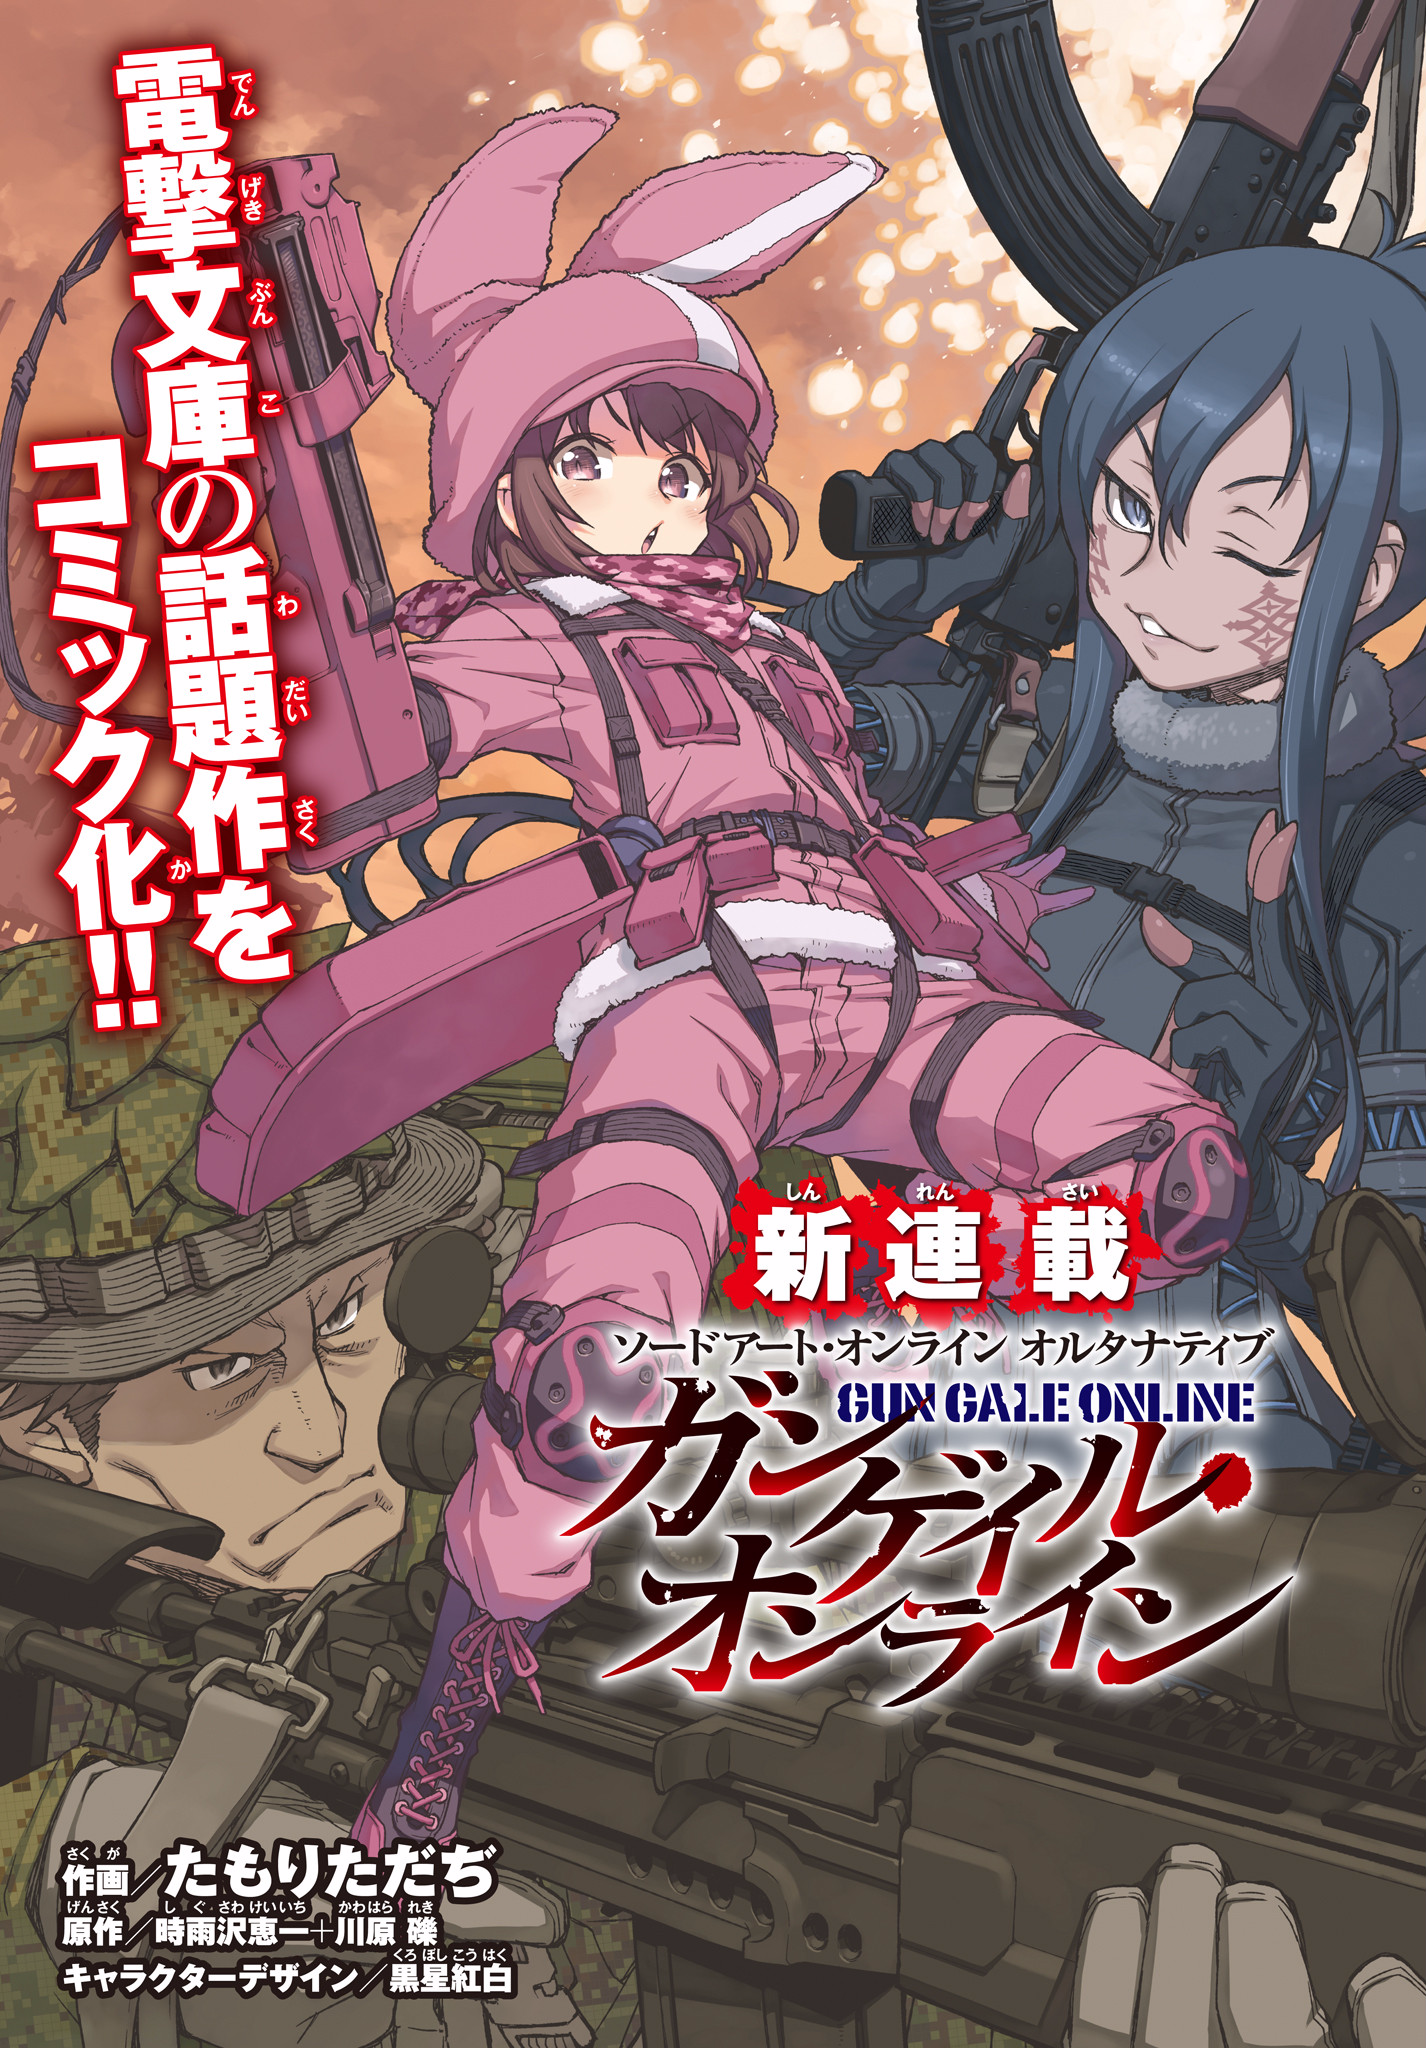 Sword Art Online Alternative: Gun Gale Online Volume 6 BD/DVD Cover Art : r/ anime